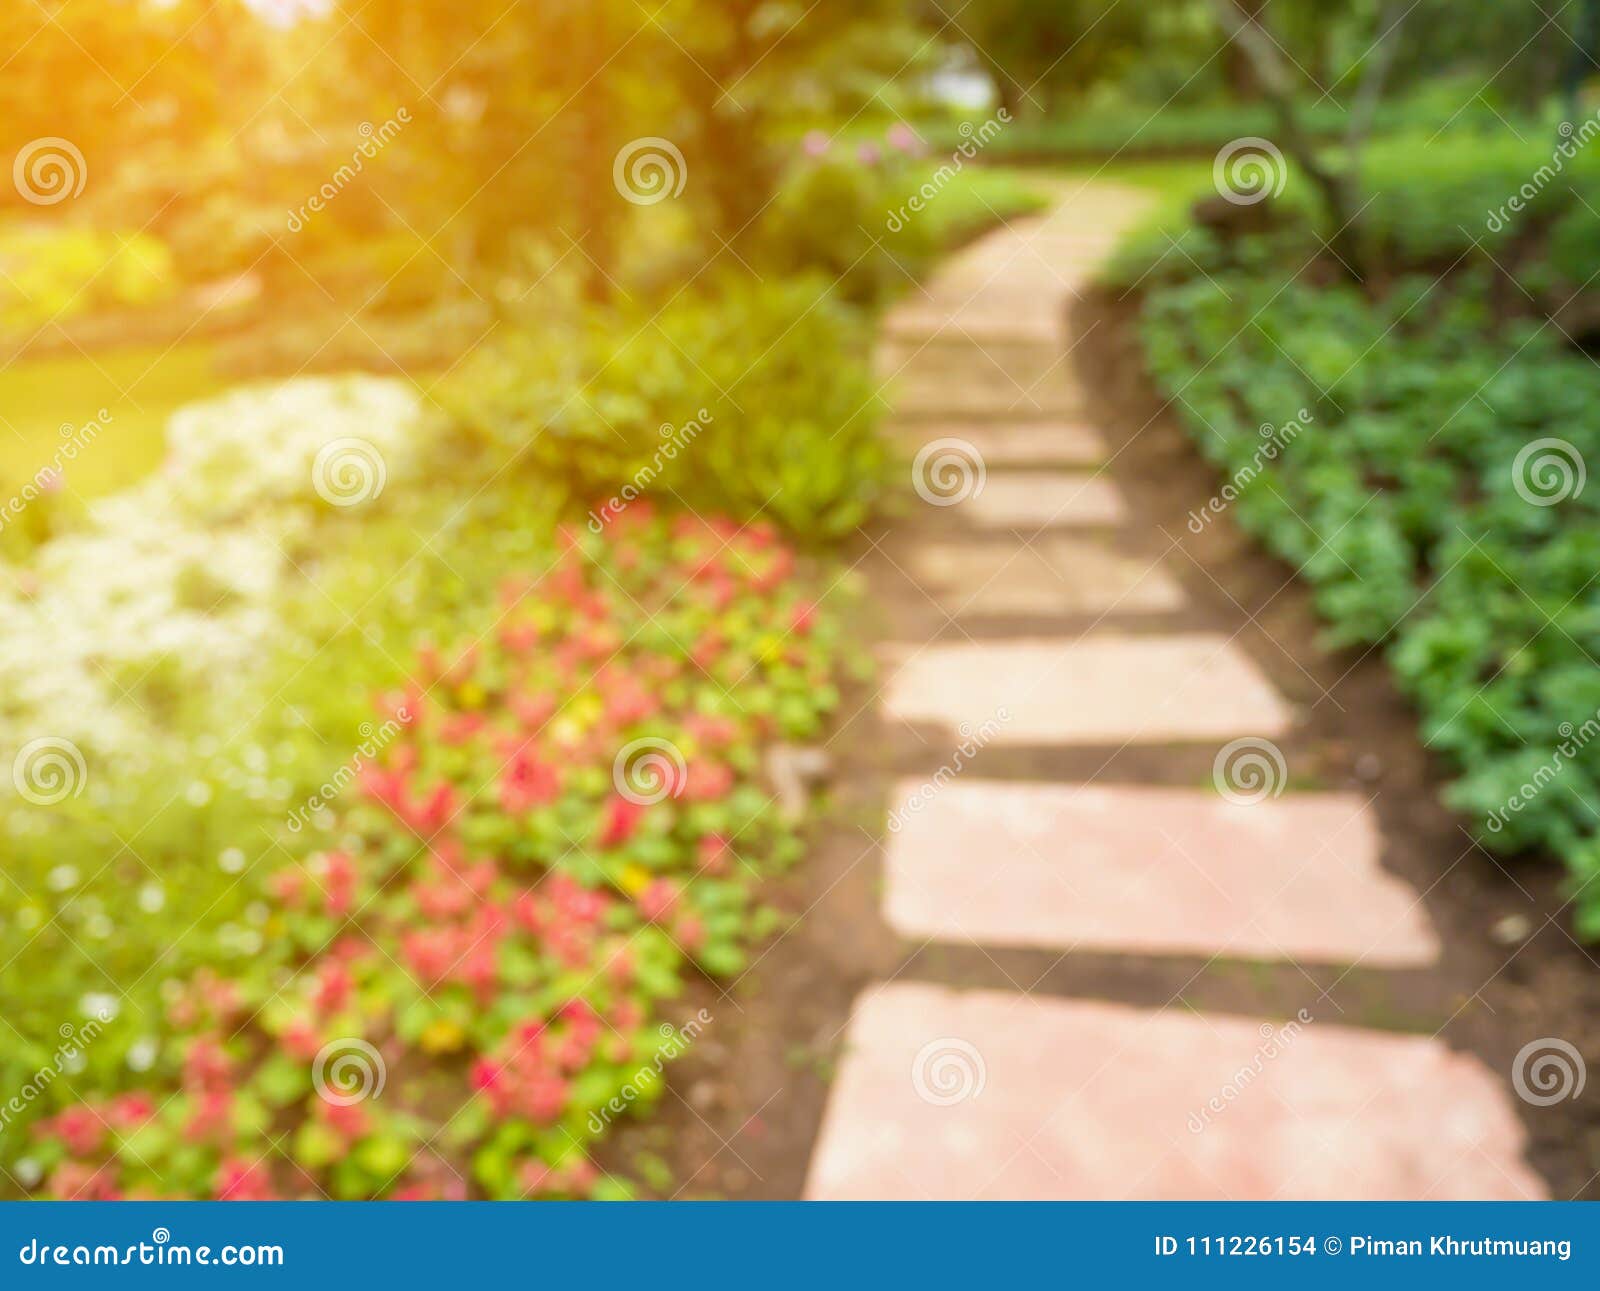 Tổng hợp 800 Garden background blur hd Đẹp và chất lượng cao nhất